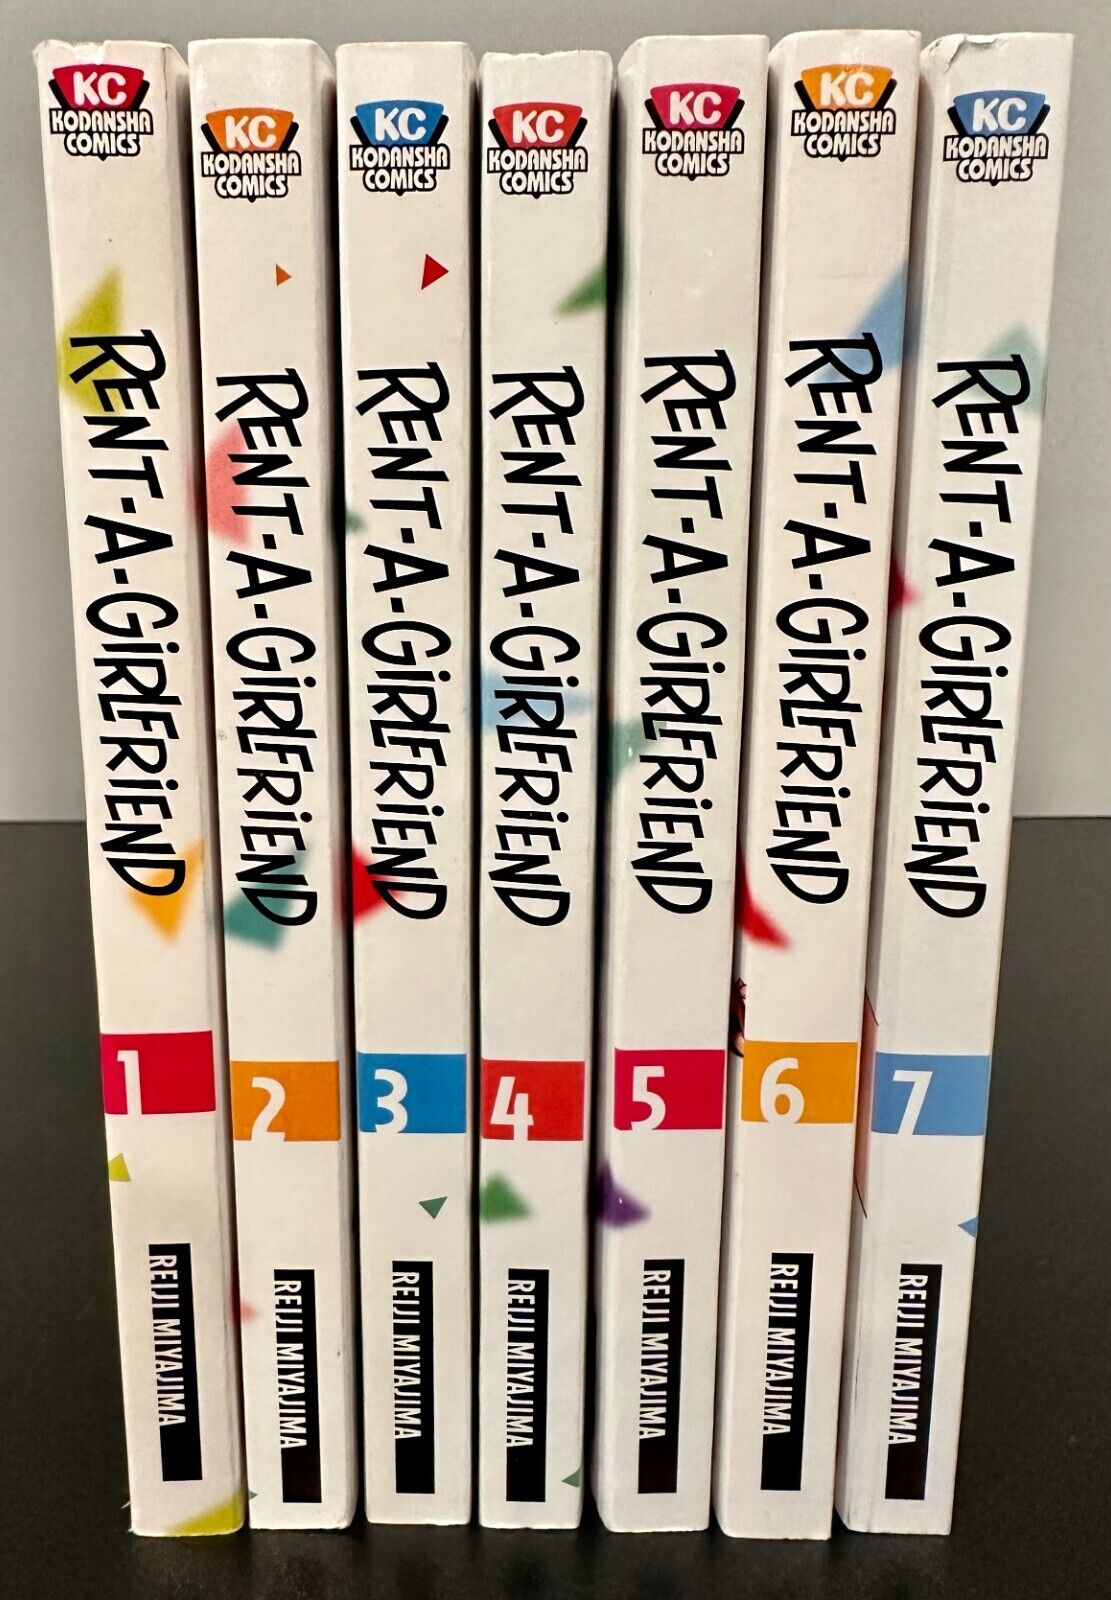 Rent-A-Girlfriend Volumes 1-7 by Reiji Miyajima (Kodansha Comics, Manga)